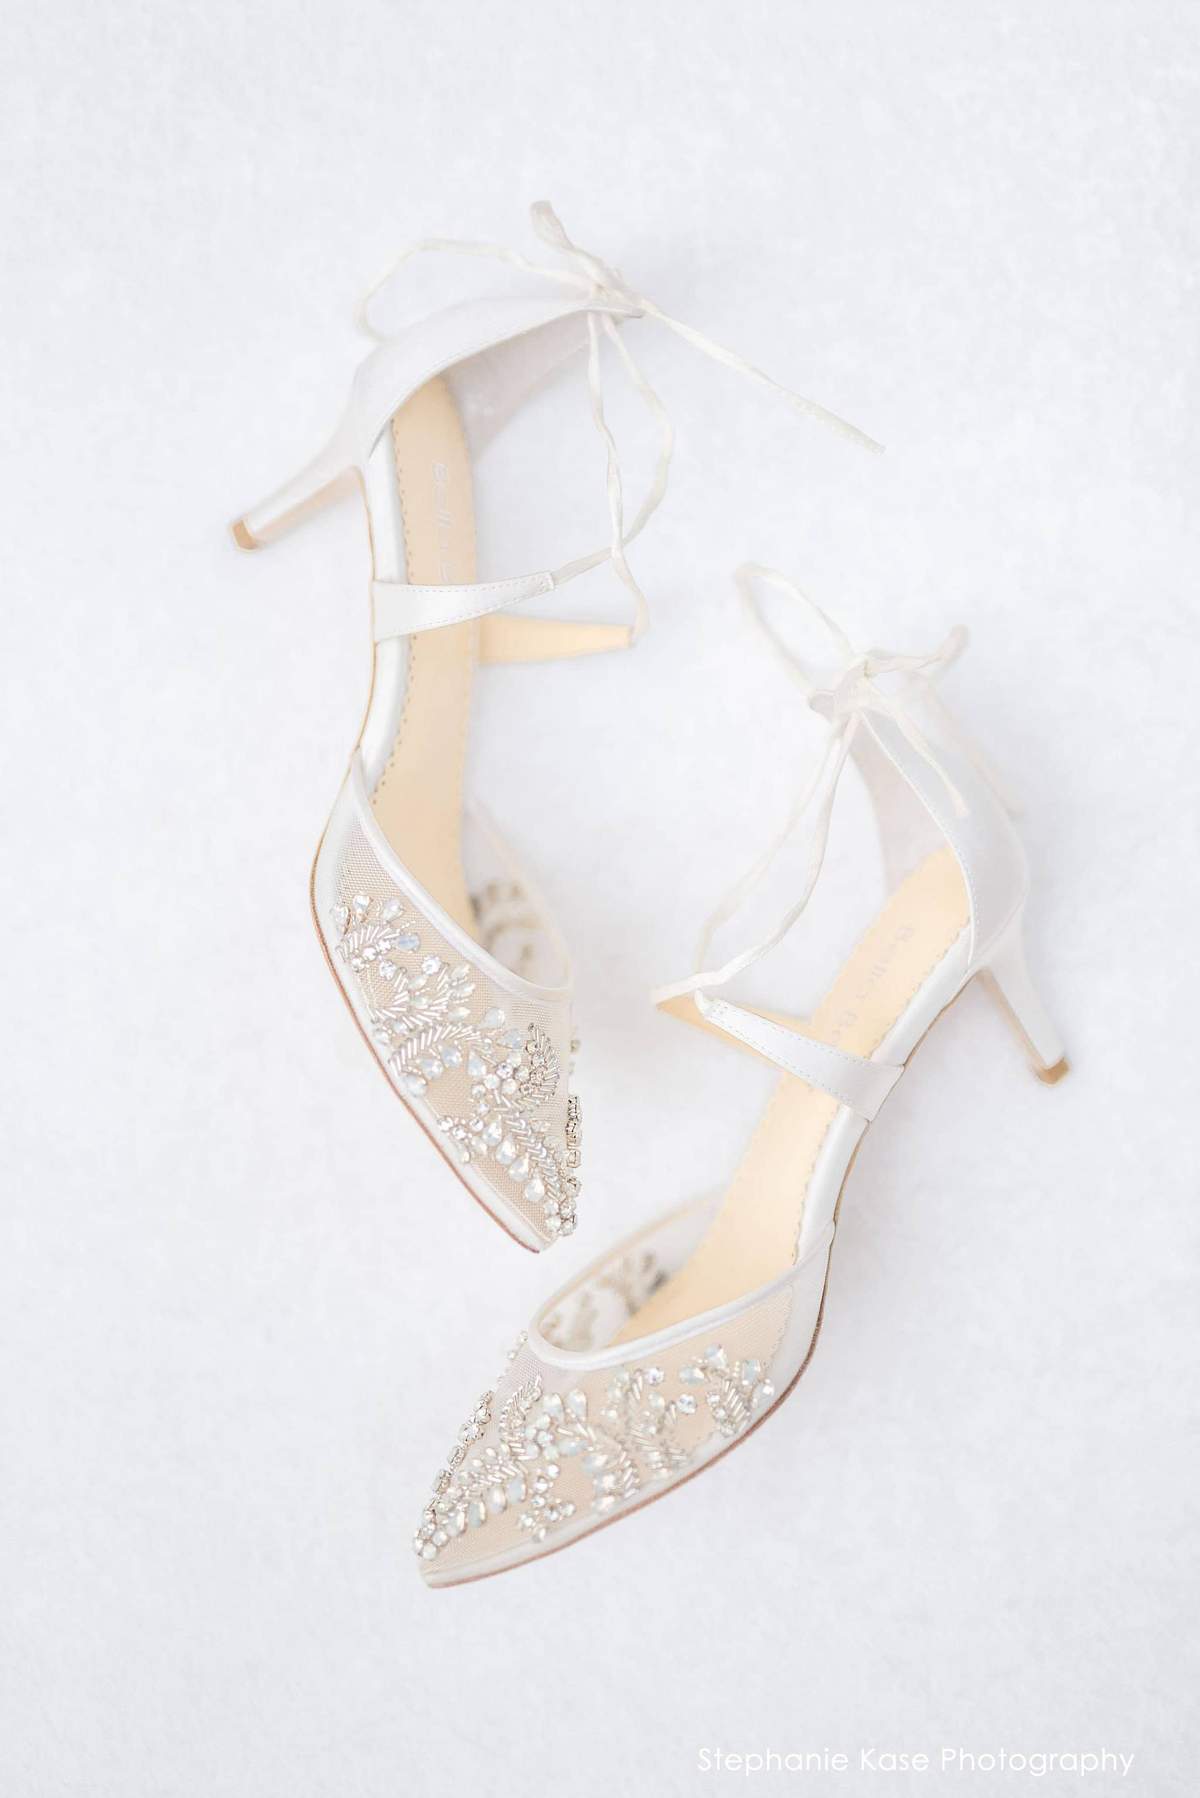 Chaussures de mariée Bellabelle Frances shoes blanc talon plates 6,5cm sandales escarpins strass confort satin